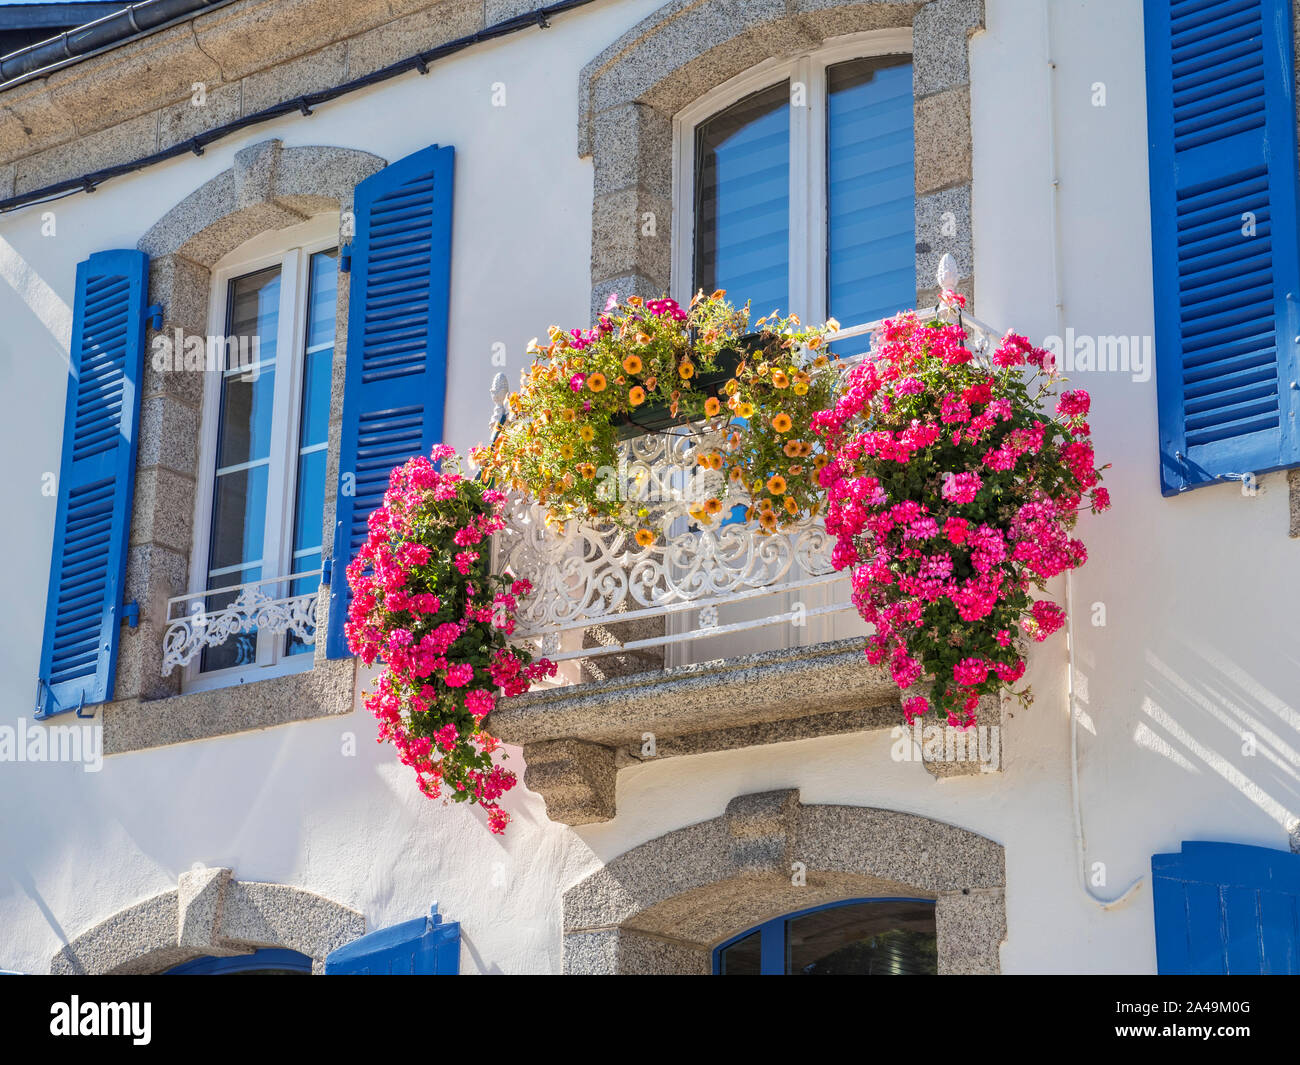 PONT AVEN Maison de Maître 'MANSION' avec d'abondantes fleurs colorées balcon et fenêtres à volets bleu traditionnel Pont Aven Bretagne France Banque D'Images